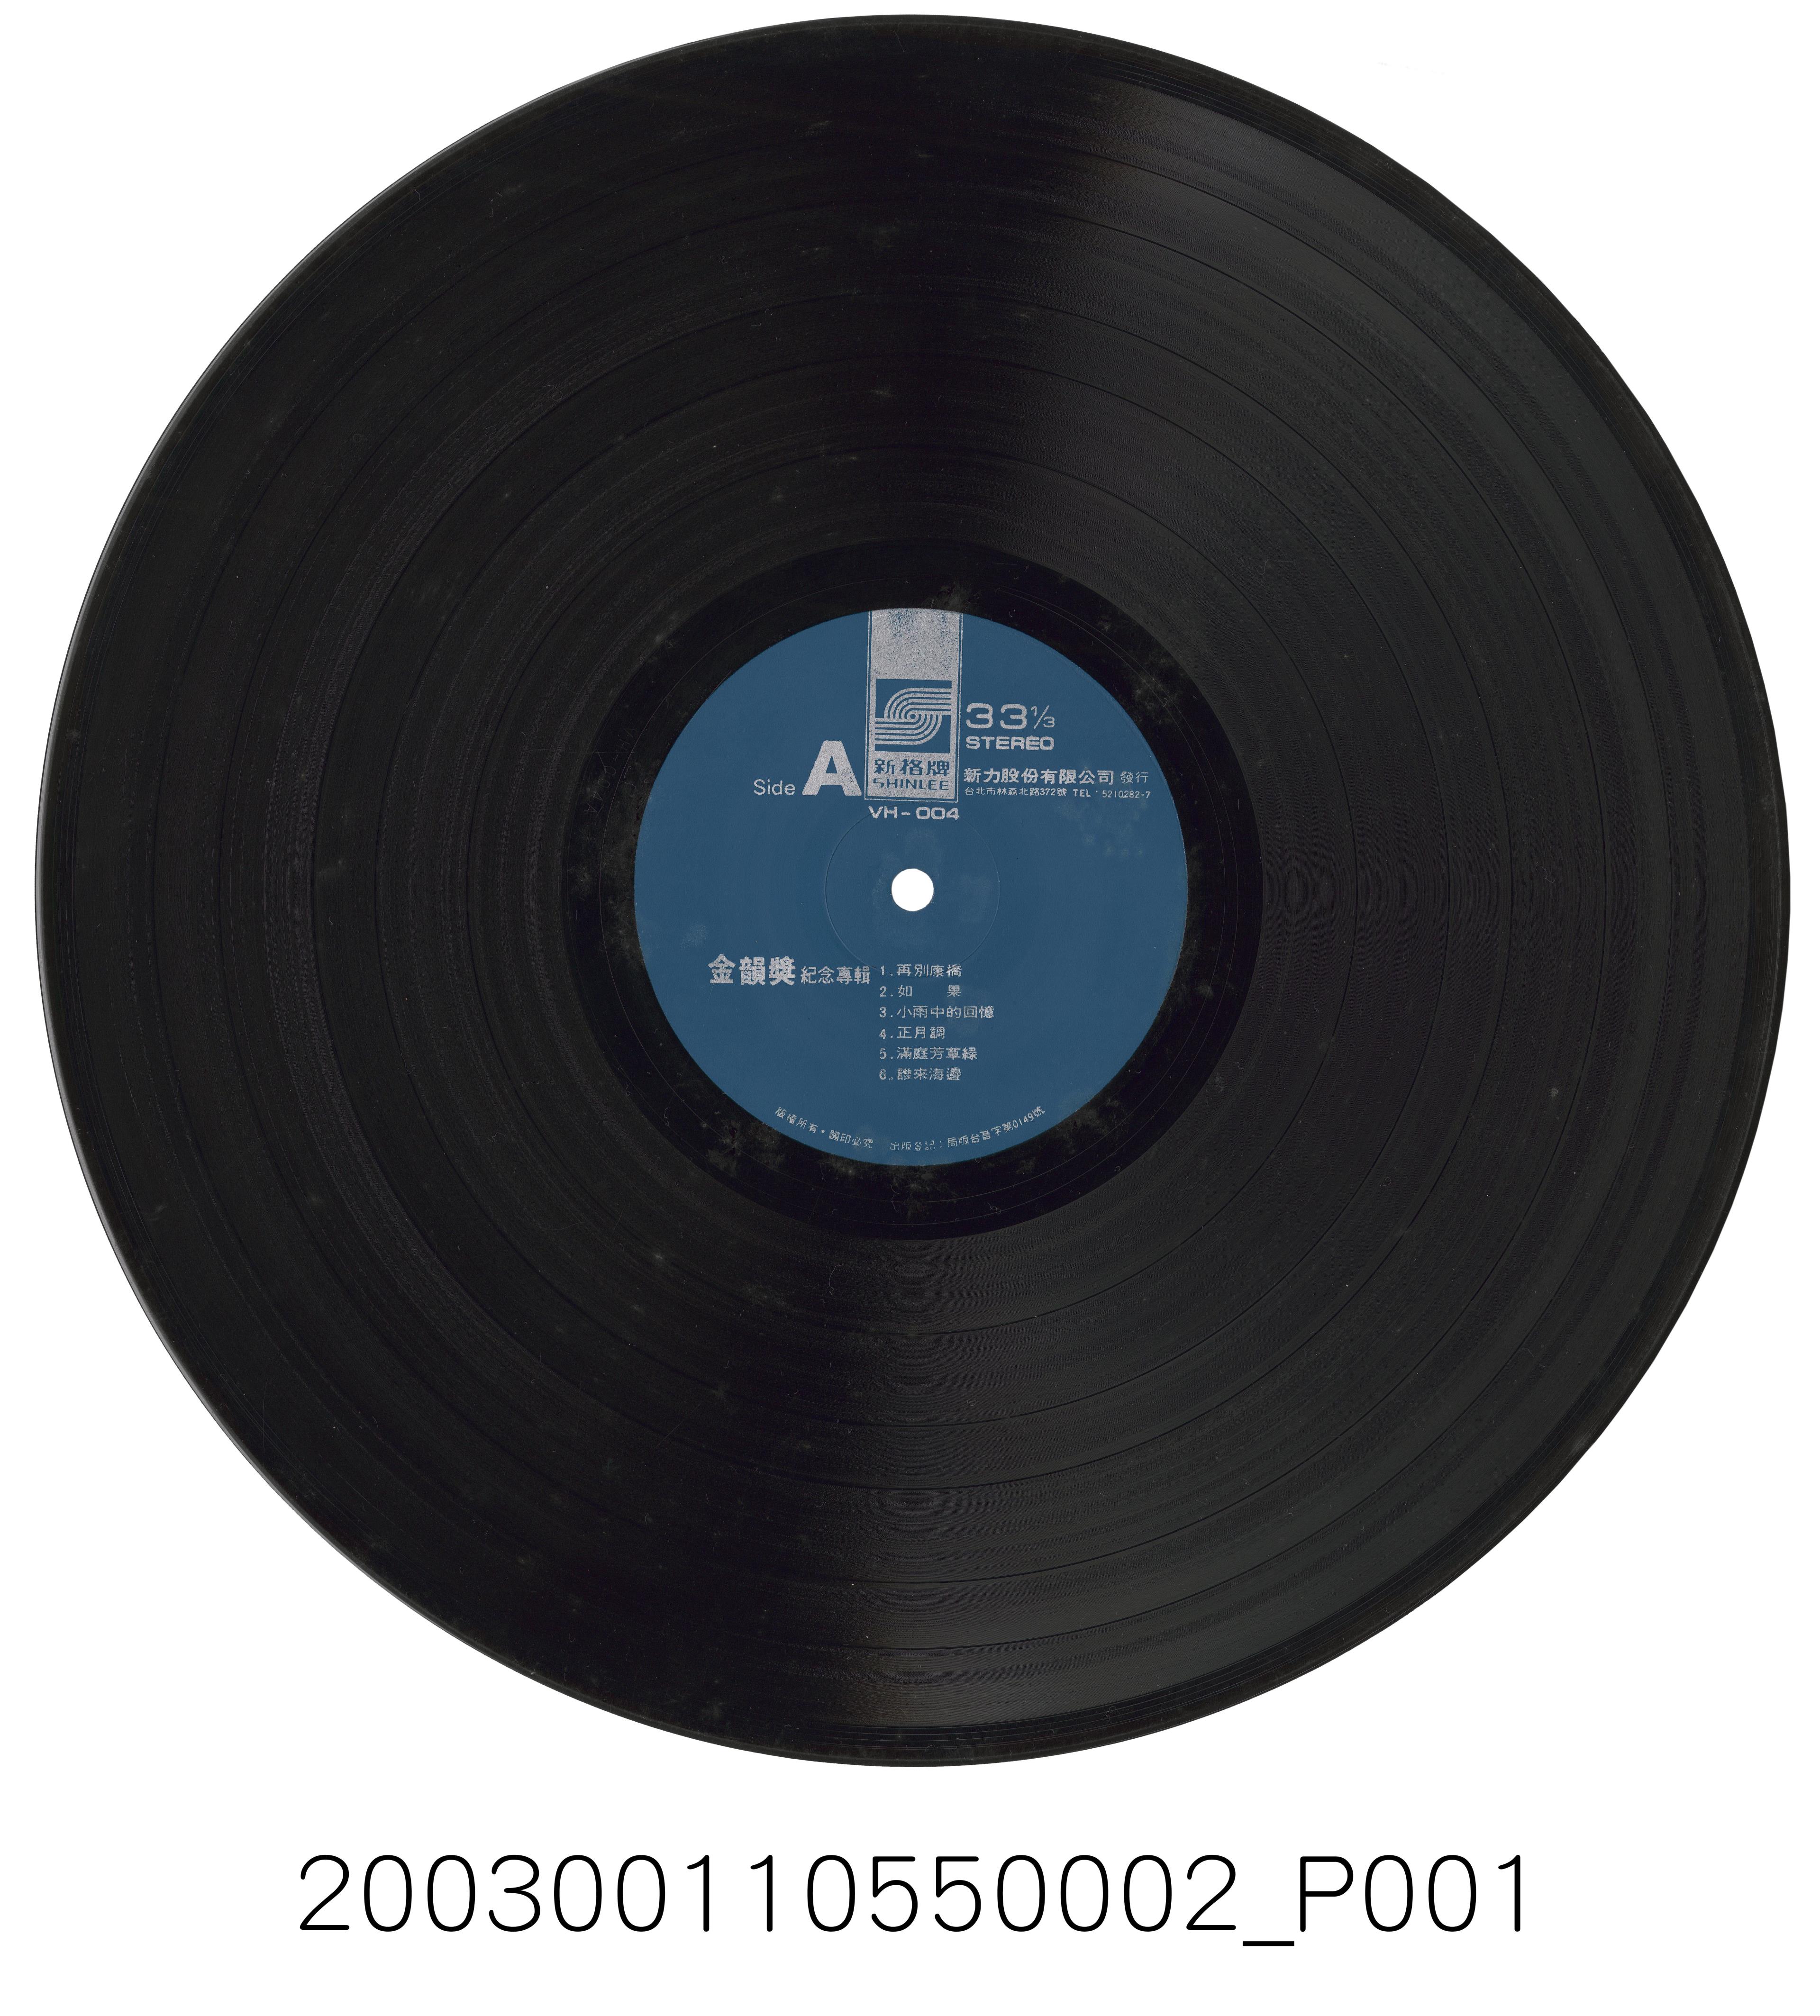 新力股份有限公司發行新格牌唱片編號「VH-004」國語歌曲專輯《金韻獎紀念專輯》12吋塑膠唱片 (共2張)